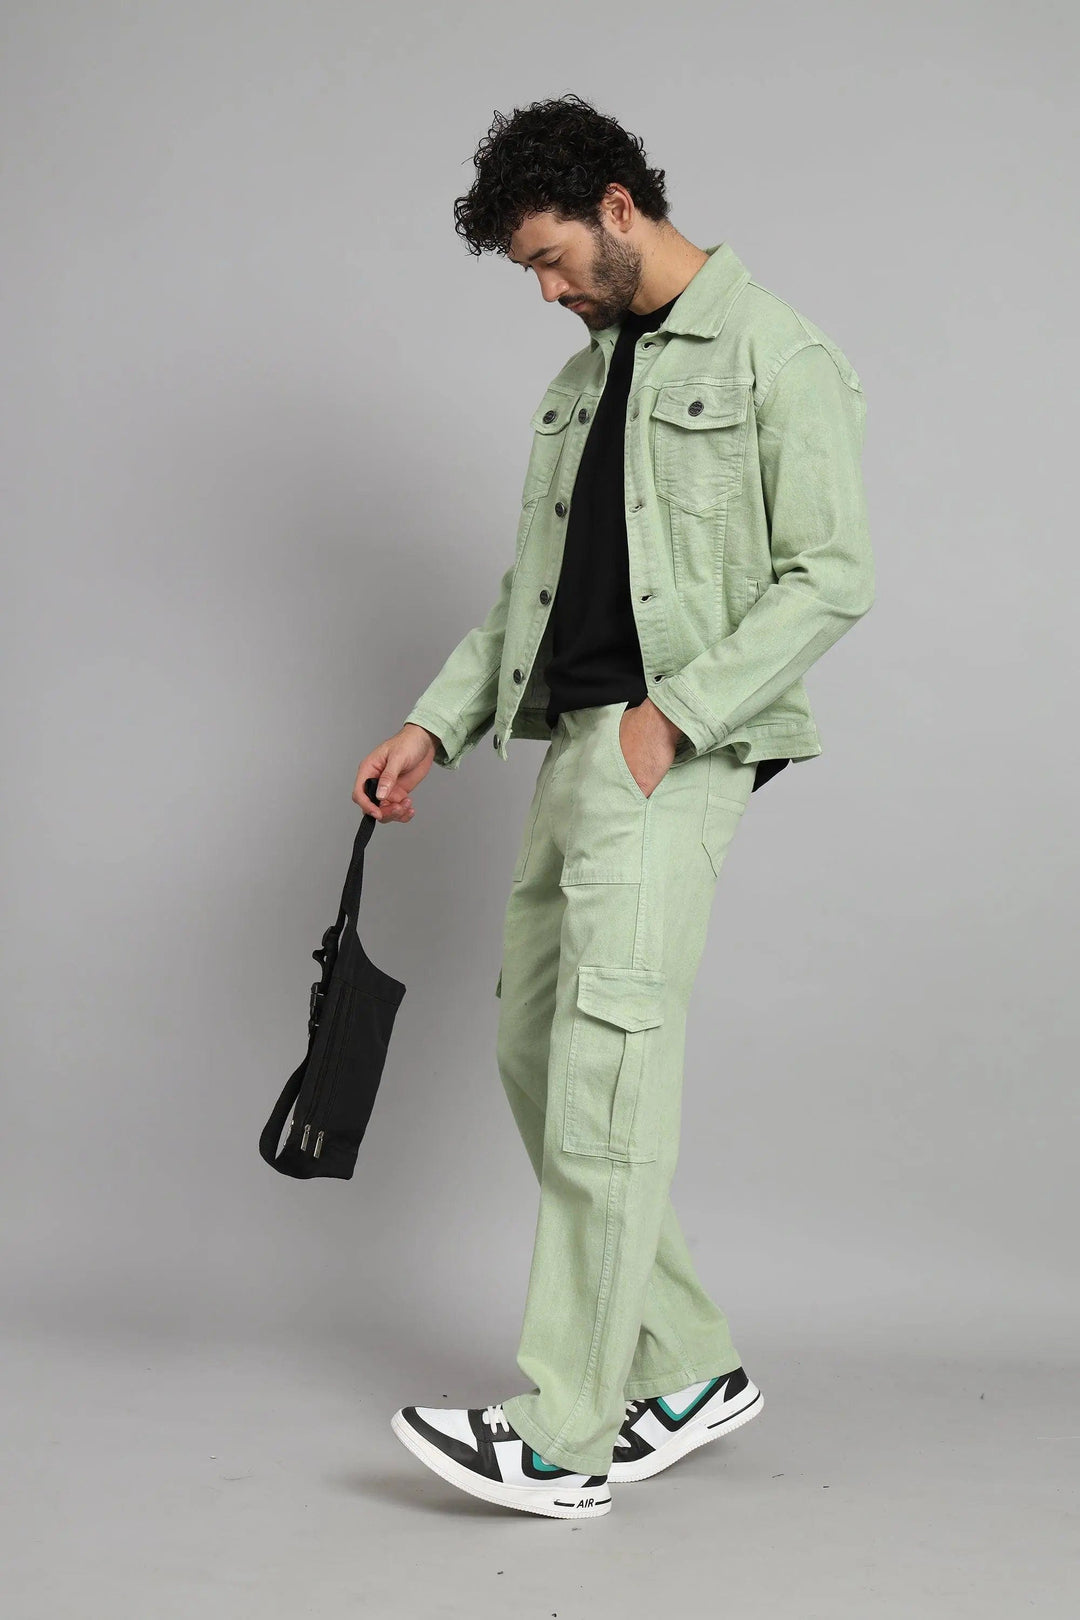 Regular Fit Pista Denim Cargo & Jacket Co-ord Set for Men - Peplos Jeans 